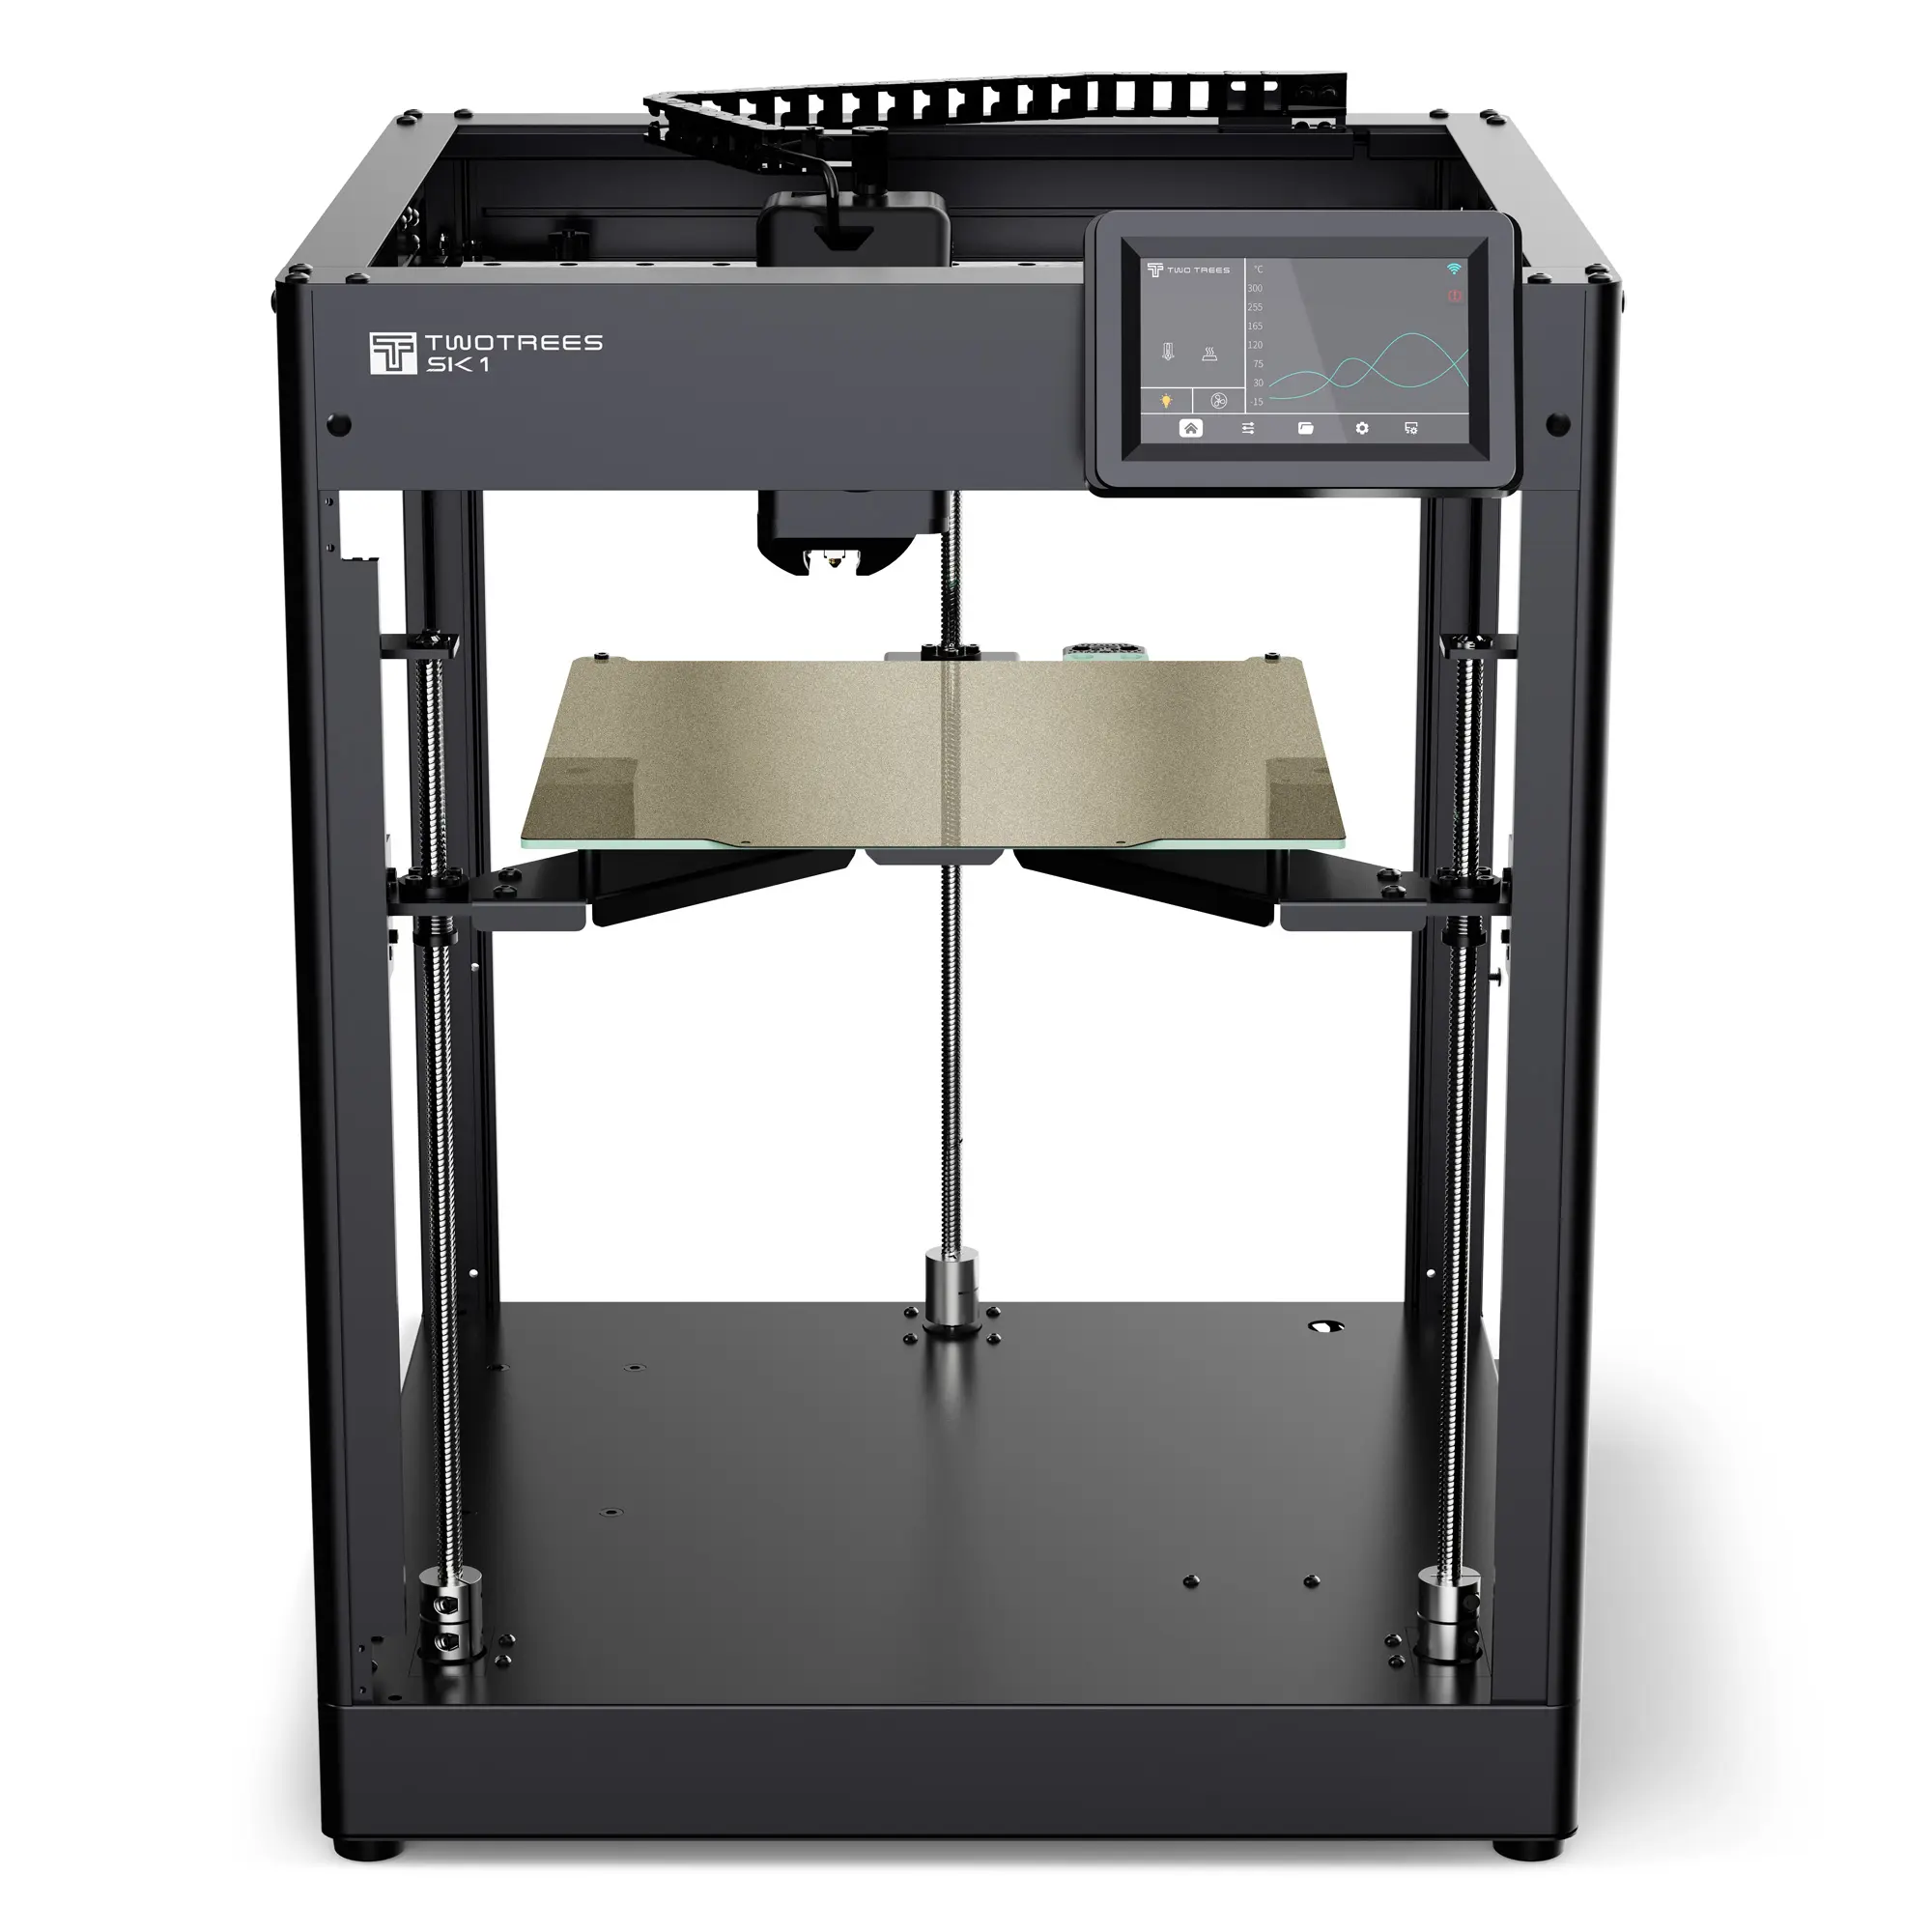 TWOTREES-SK1 Smart Klipper 3D-Drucker Neue Generation von 700 mm/s Hochgeschwindigkeits-Desktop-CoreXY & Klipper FDM 3D-Drucker für Anfänger